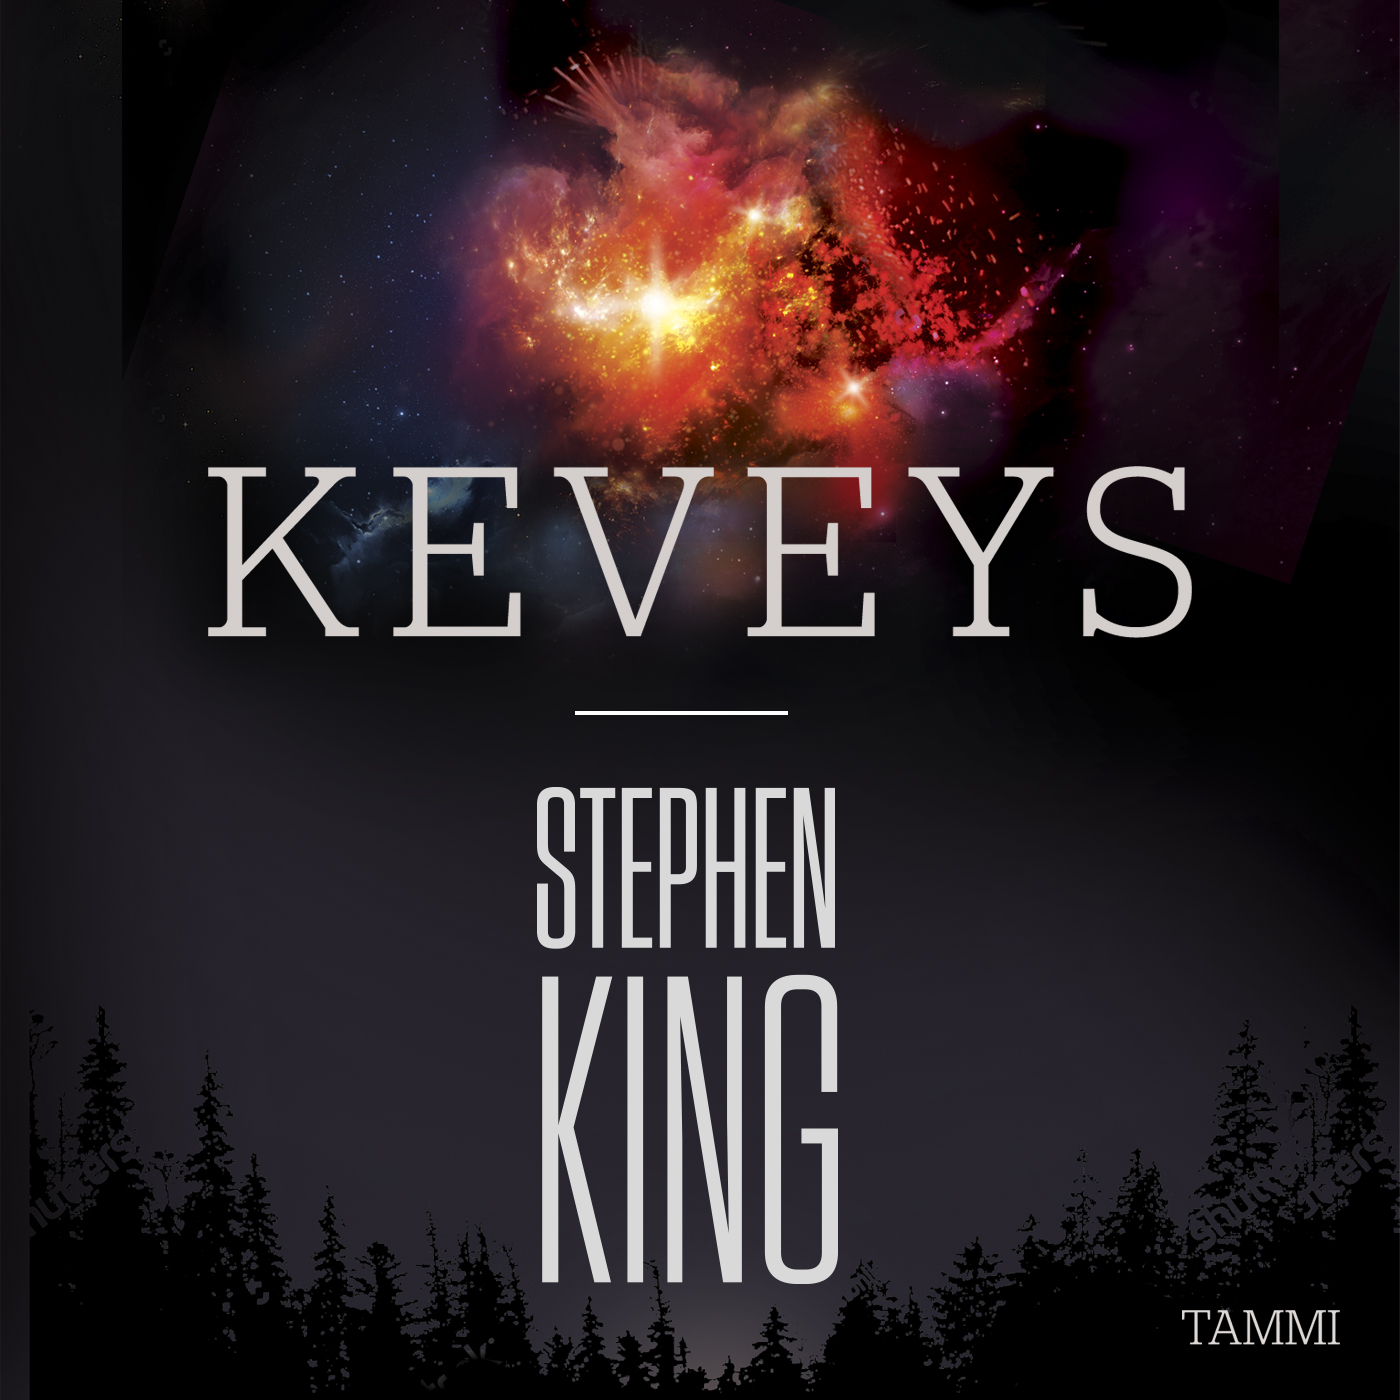 King, Stephen - Keveys, äänikirja